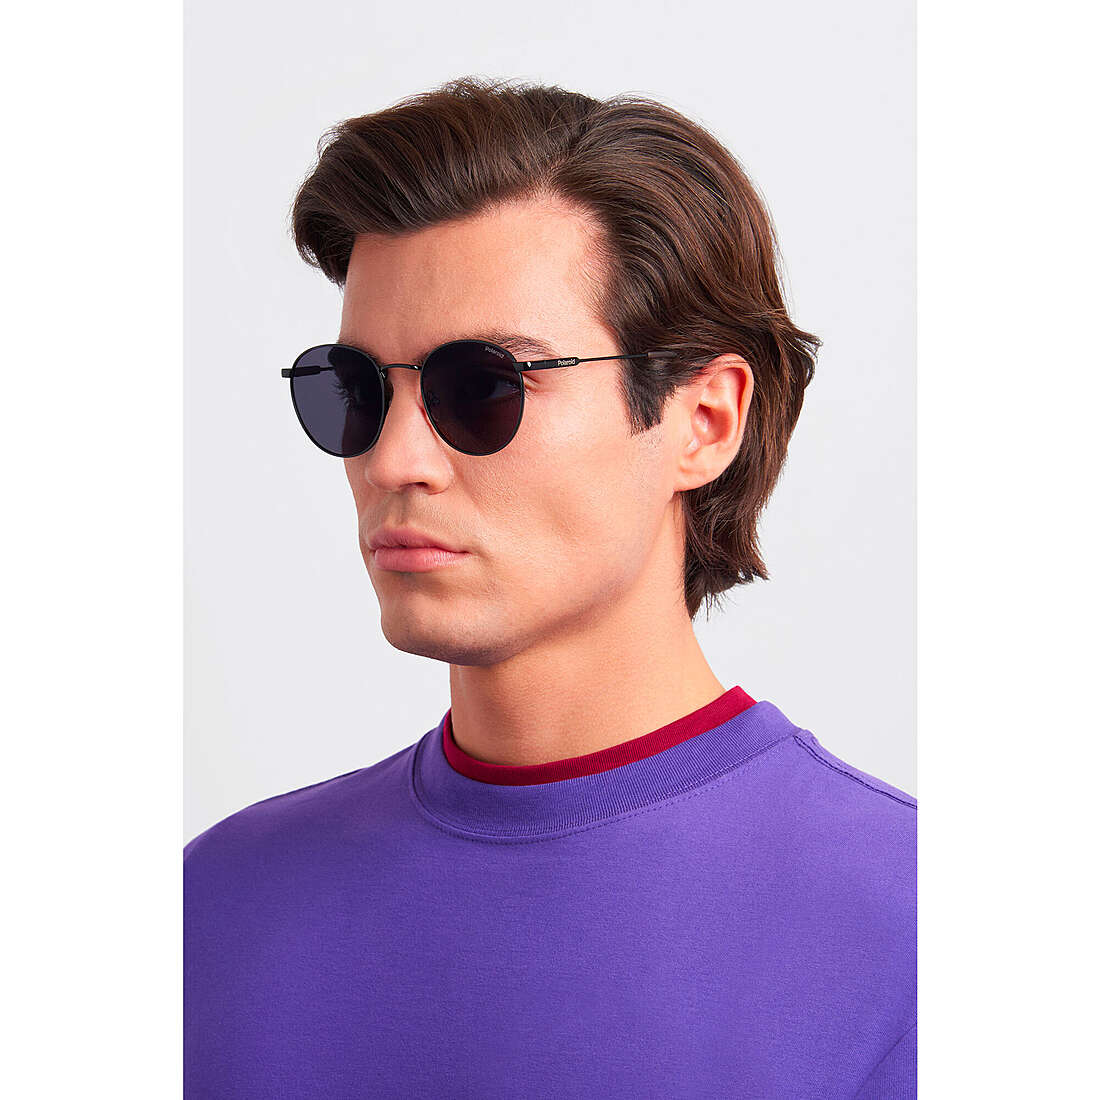 Polaroid occhiali da sole Cool unisex 20481080751M9 indosso